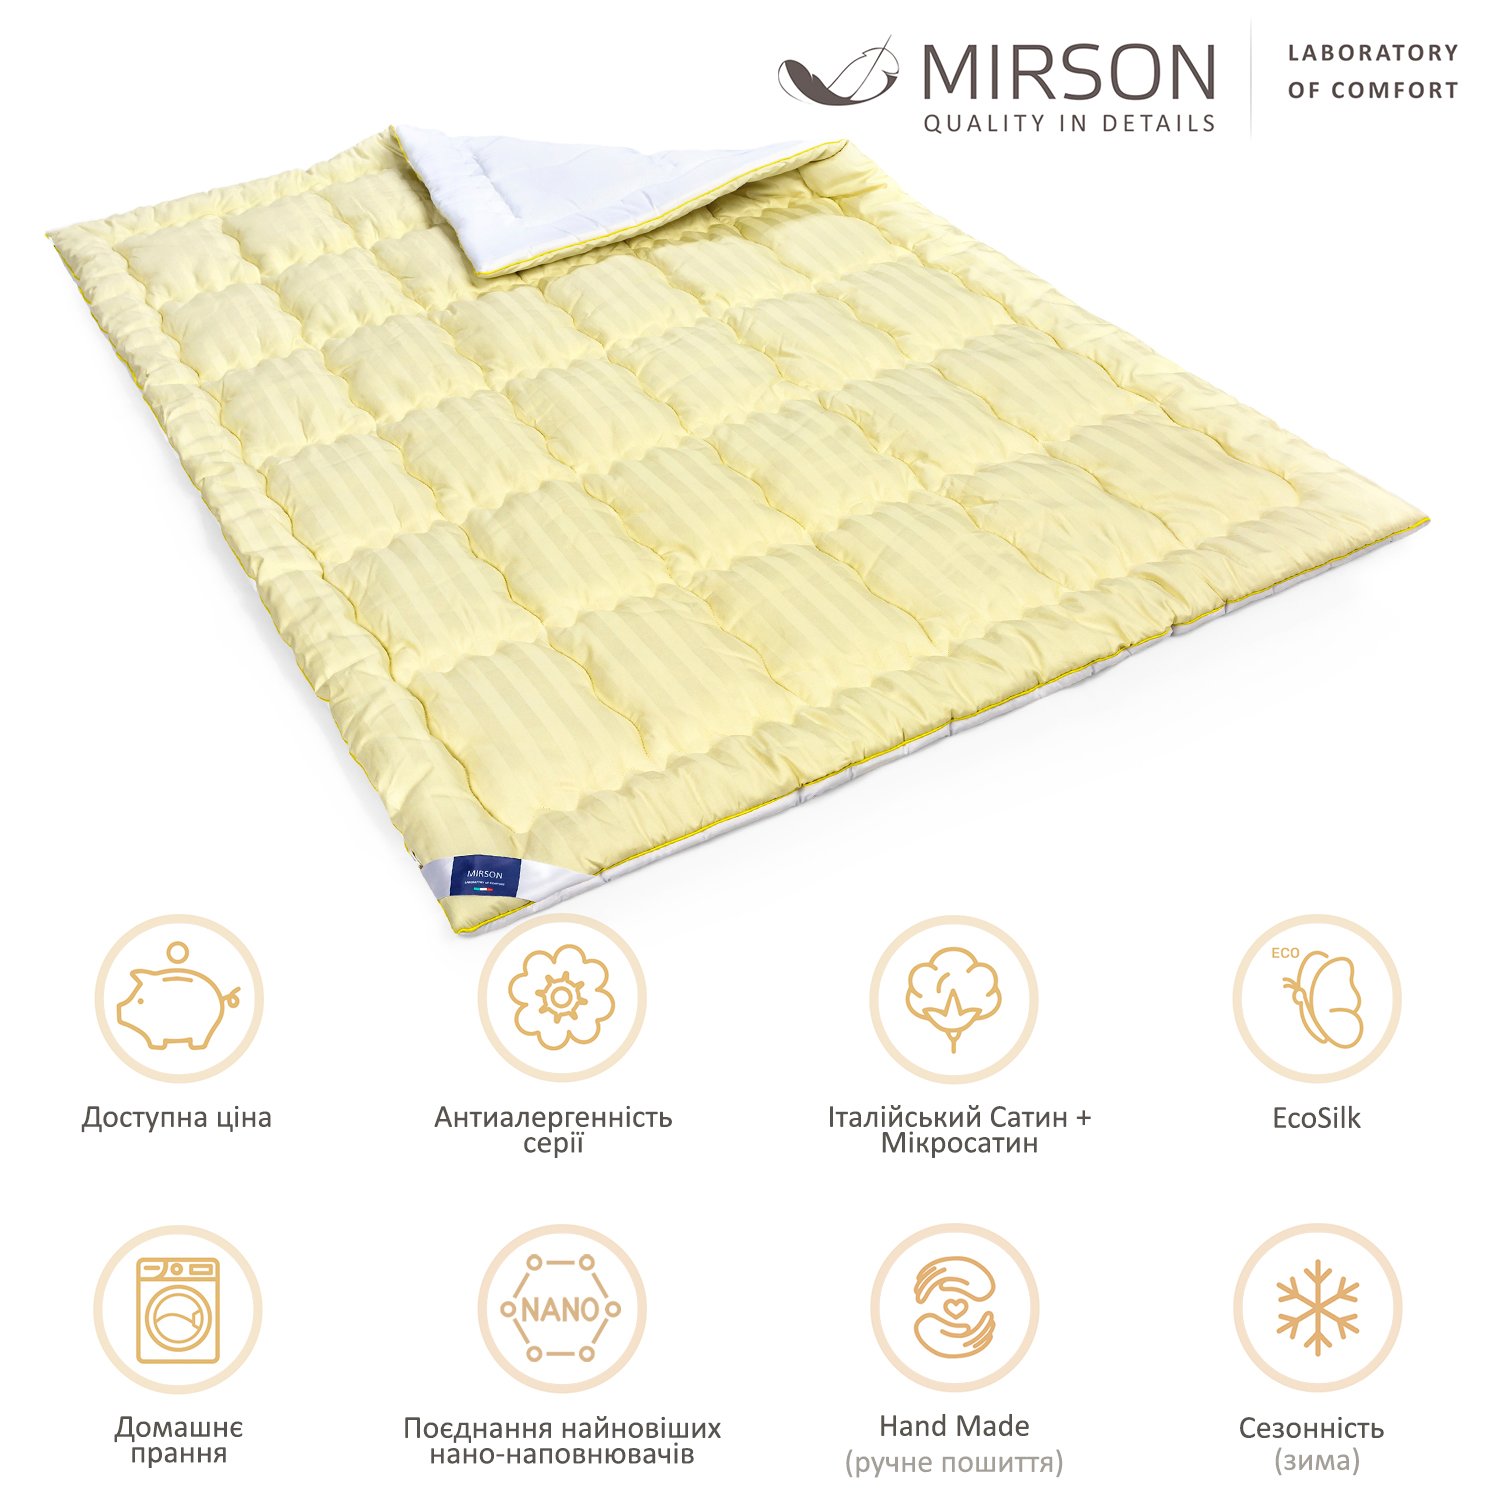 Одеяло антиаллергенное MirSon Carmela Hand Made EcoSilk №0555, зимнее, 220x240 см, желто-белое - фото 6